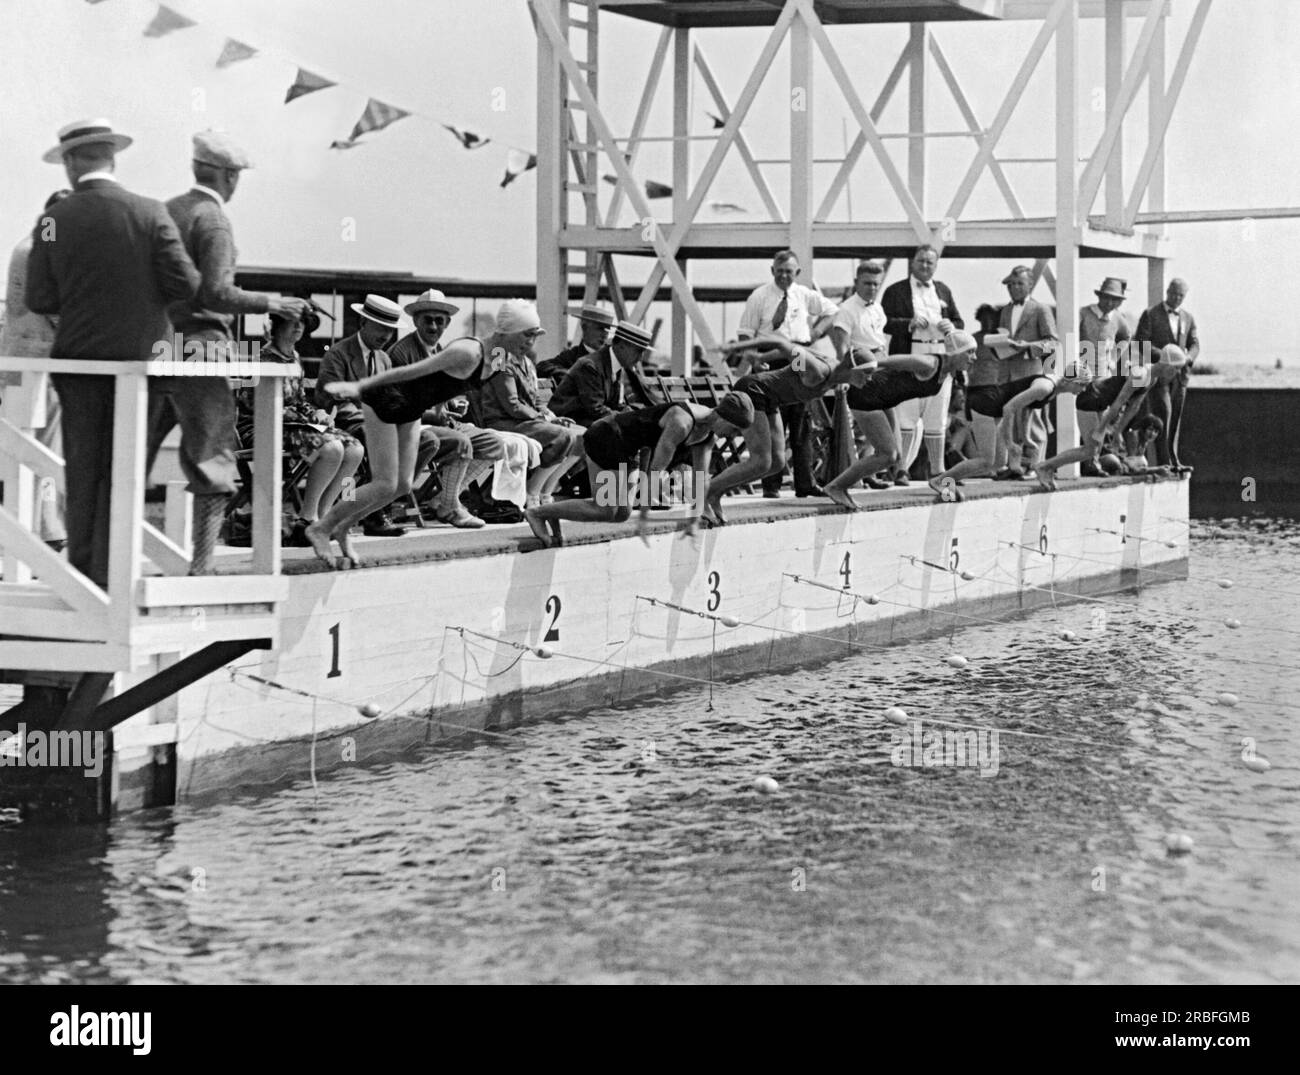 Massapequa, New York : 28 juillet 1927 départ du 100 mètres nage libre féminin au National A.A.U. Le championnat de natation a lieu au Biltmore Shore Yacht Club sur long Island. L'événement a été remporté par Martha Norelius, et Adelaide Lambert en deuxième place. Banque D'Images